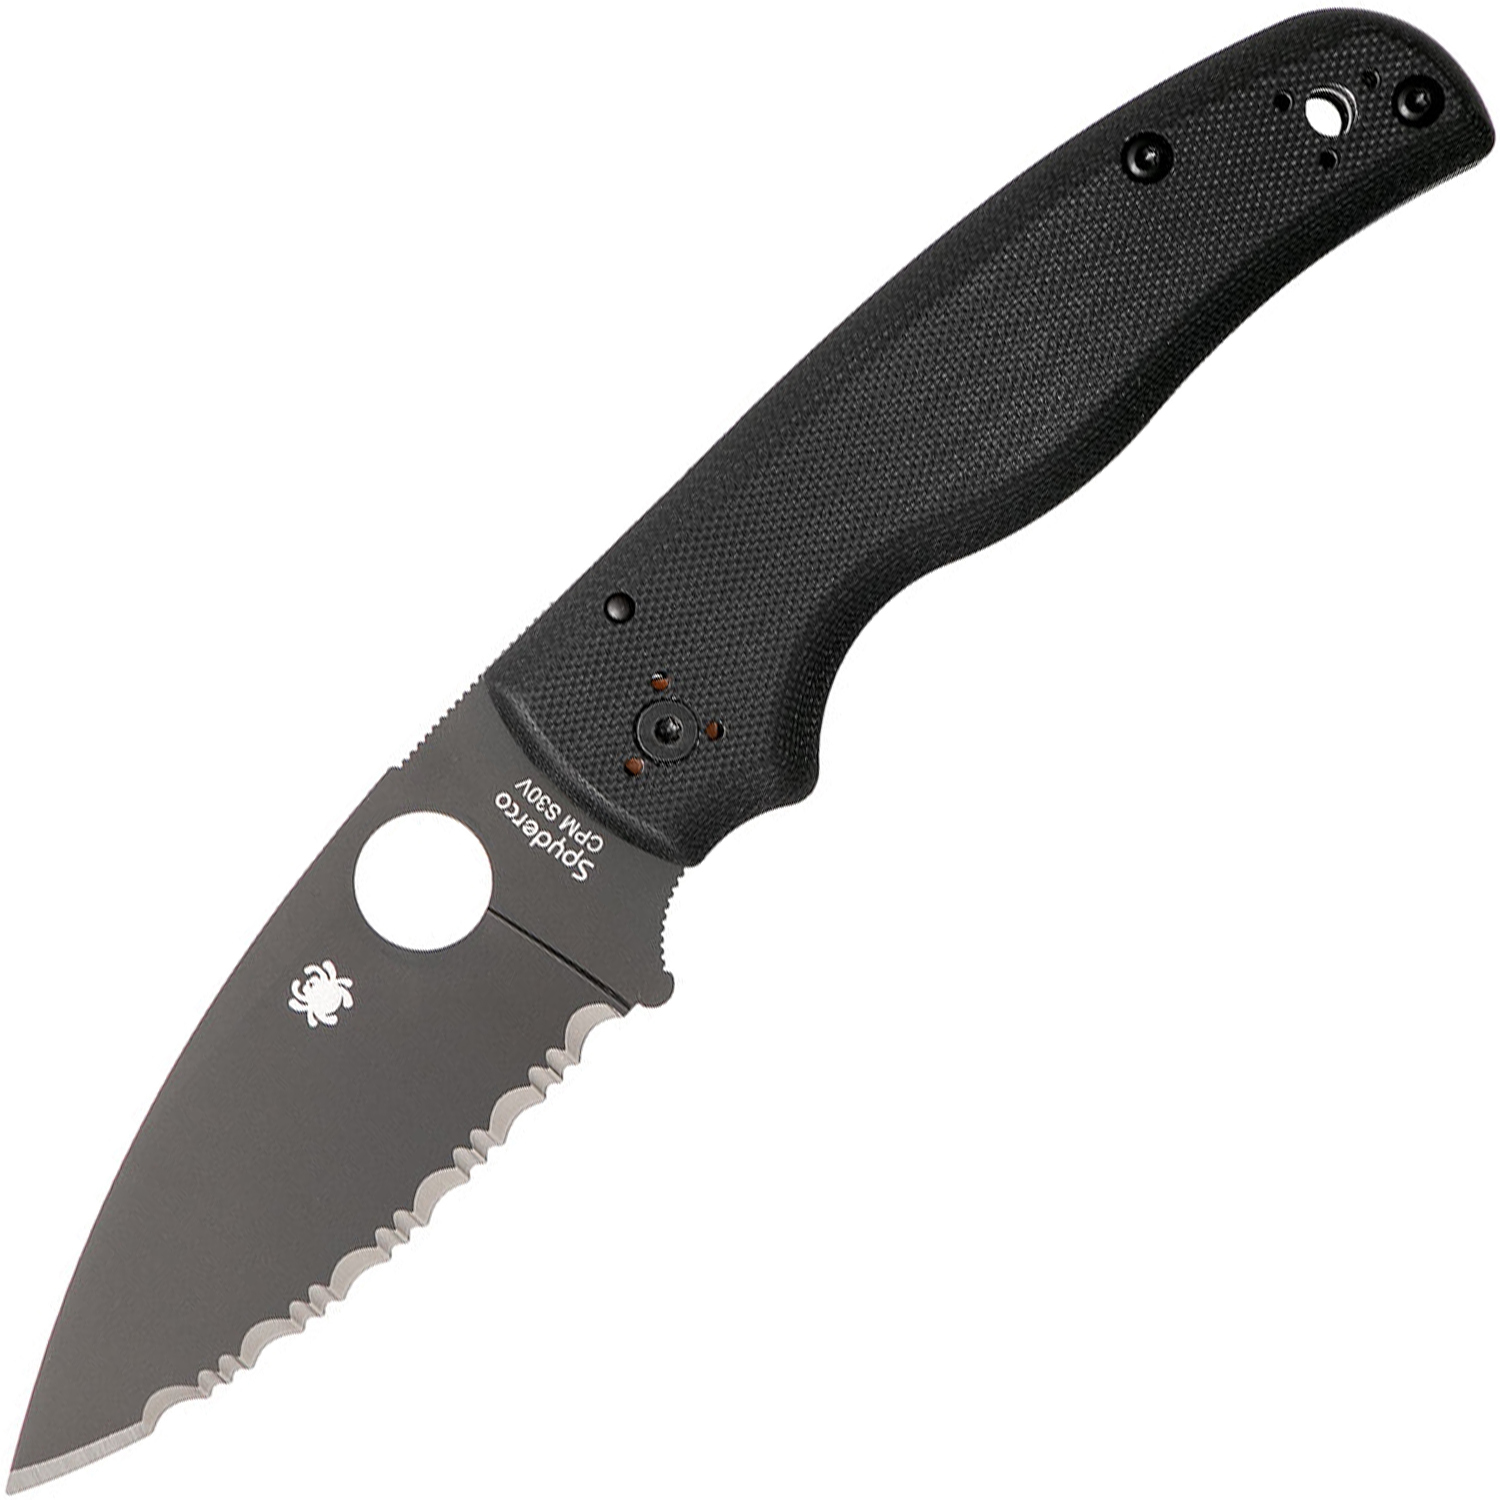 Складной нож Spyderco Shaman C229GSBK, сталь CPM® S30V™ Black DLC Coated Plain, рукоять стеклотекстолит G10, чёрный